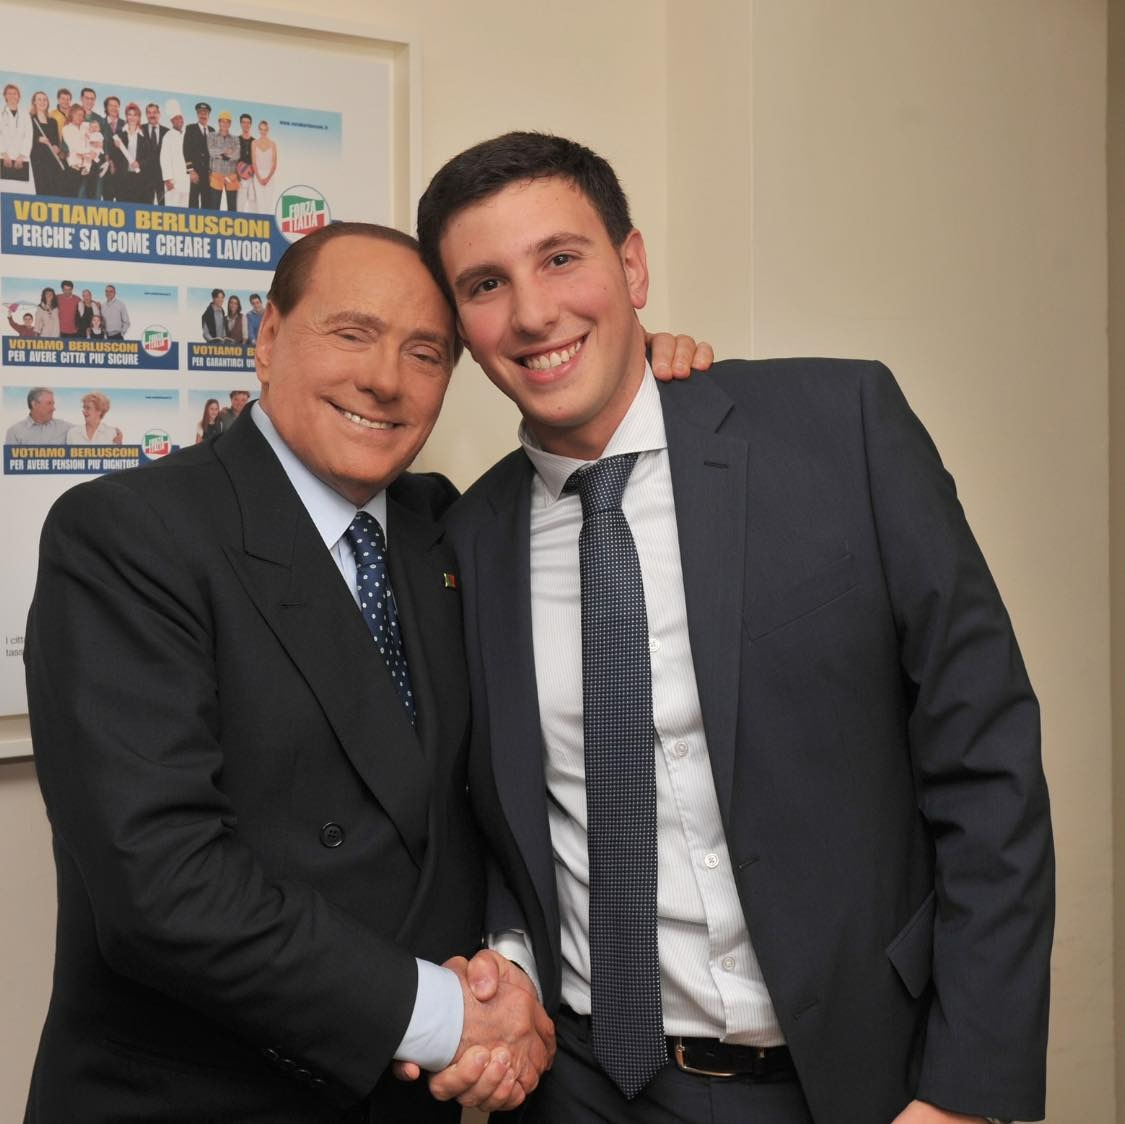 Ascoli Piceno – Il Comune omaggia Berlusconi, gli verrà intitolata una via